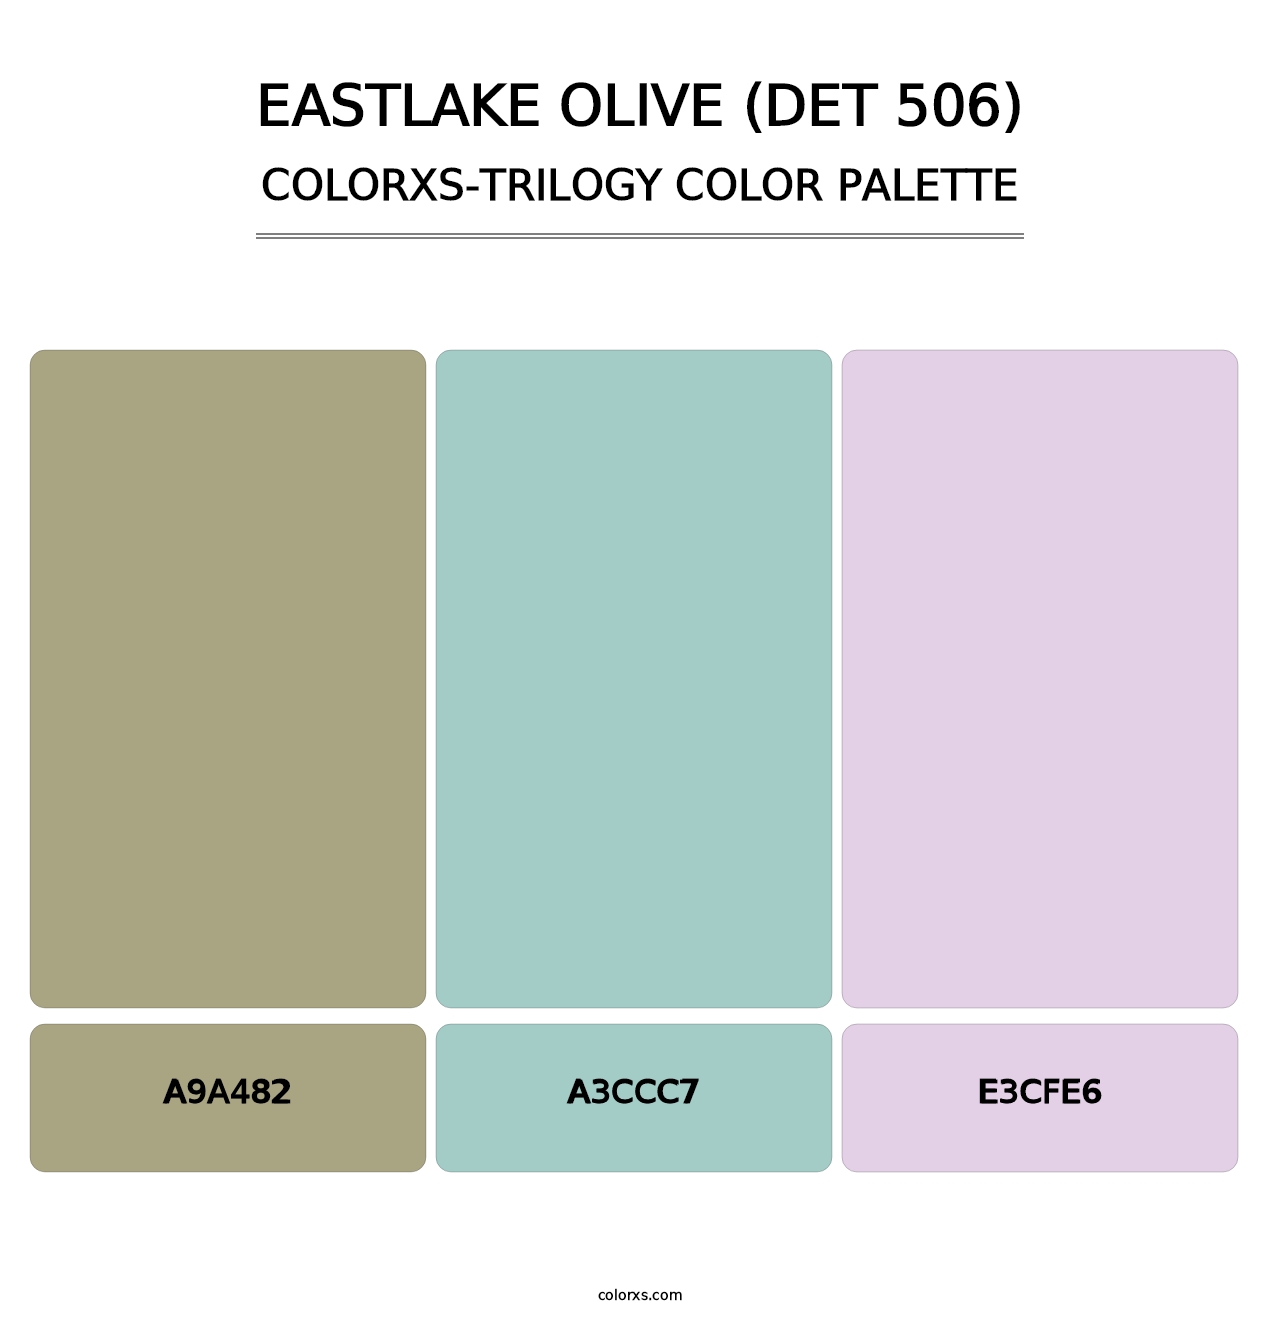 Eastlake Olive (DET 506) - Colorxs Trilogy Palette